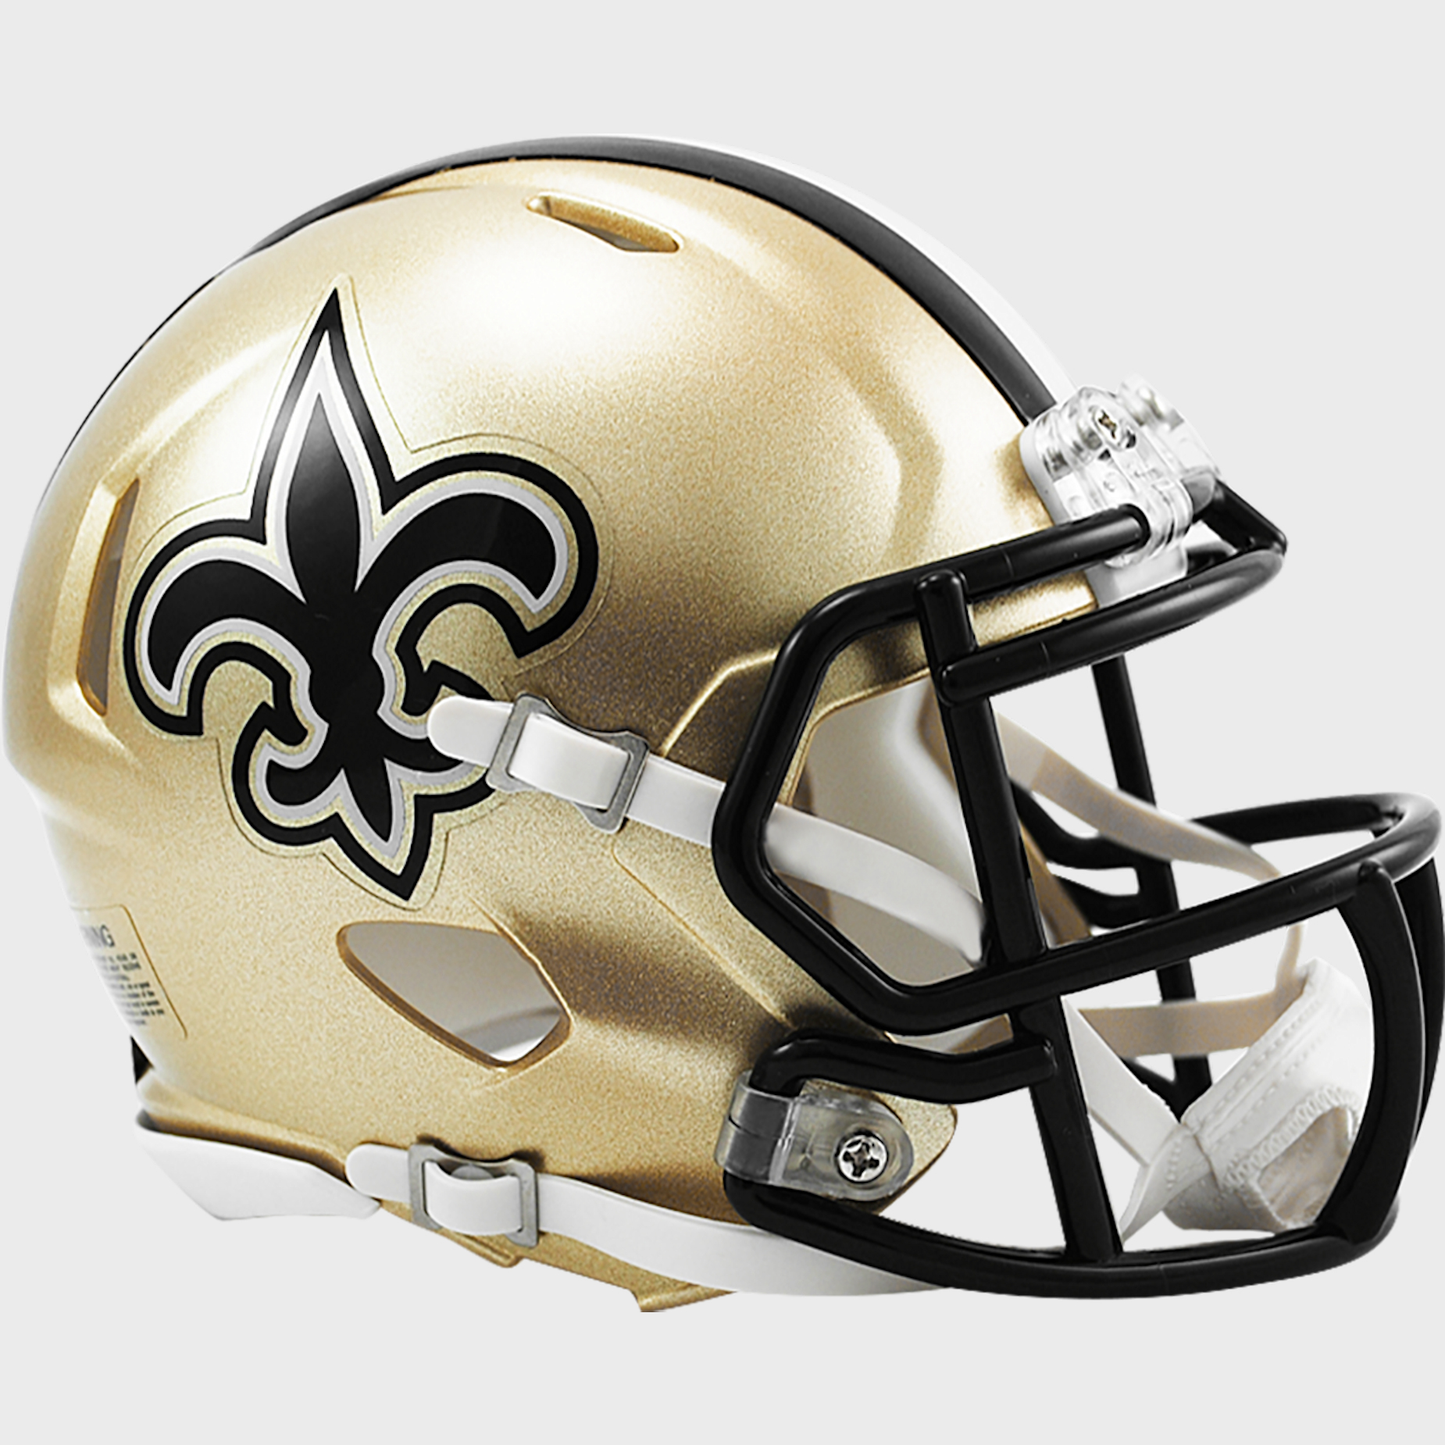 New Orleans Saints mini helmet